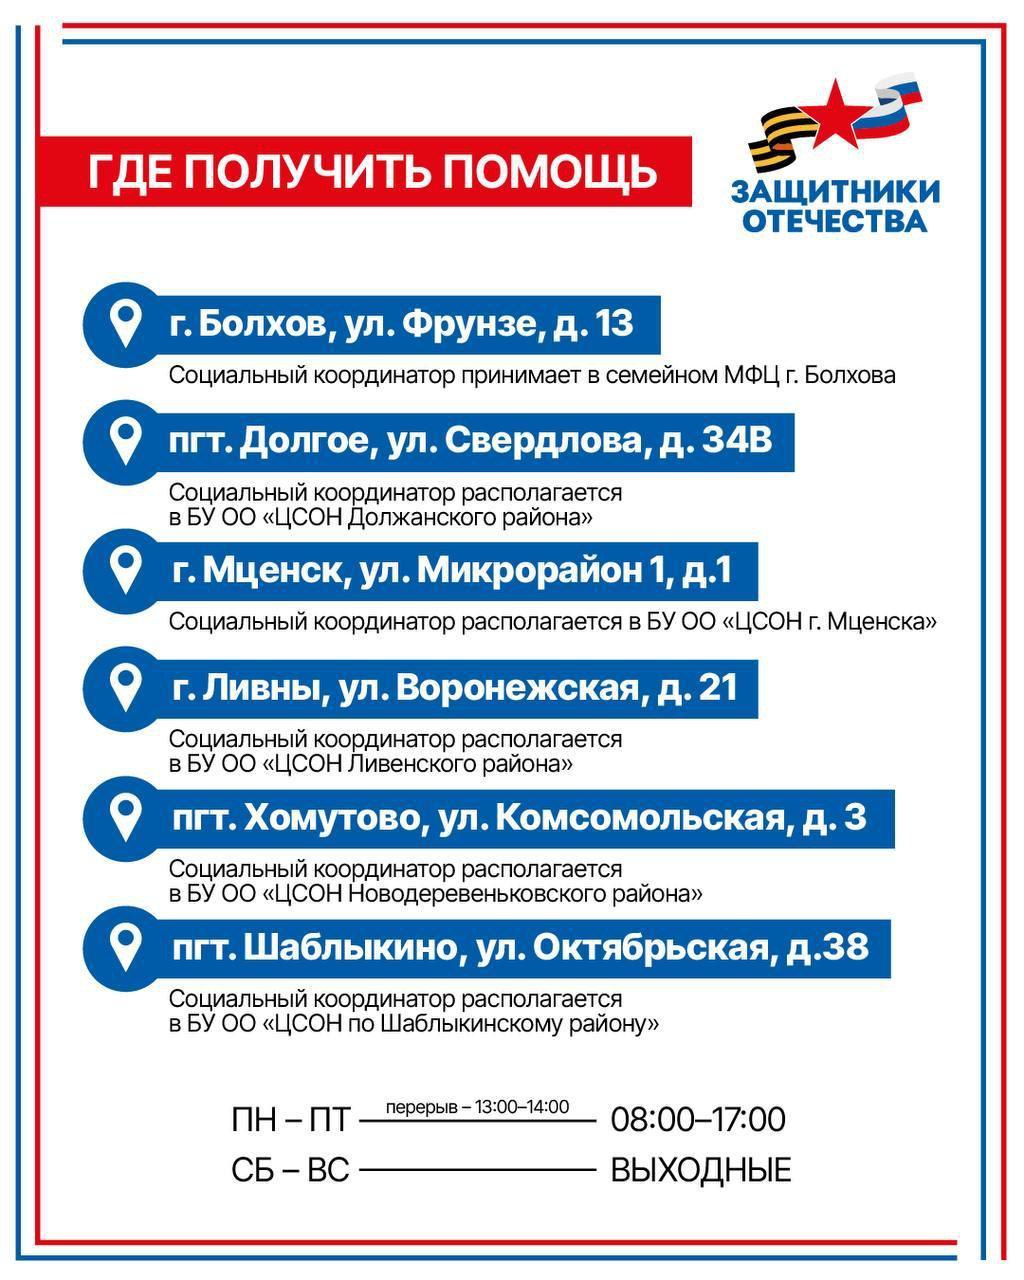 График работы социальных координаторов в районах Орловской области